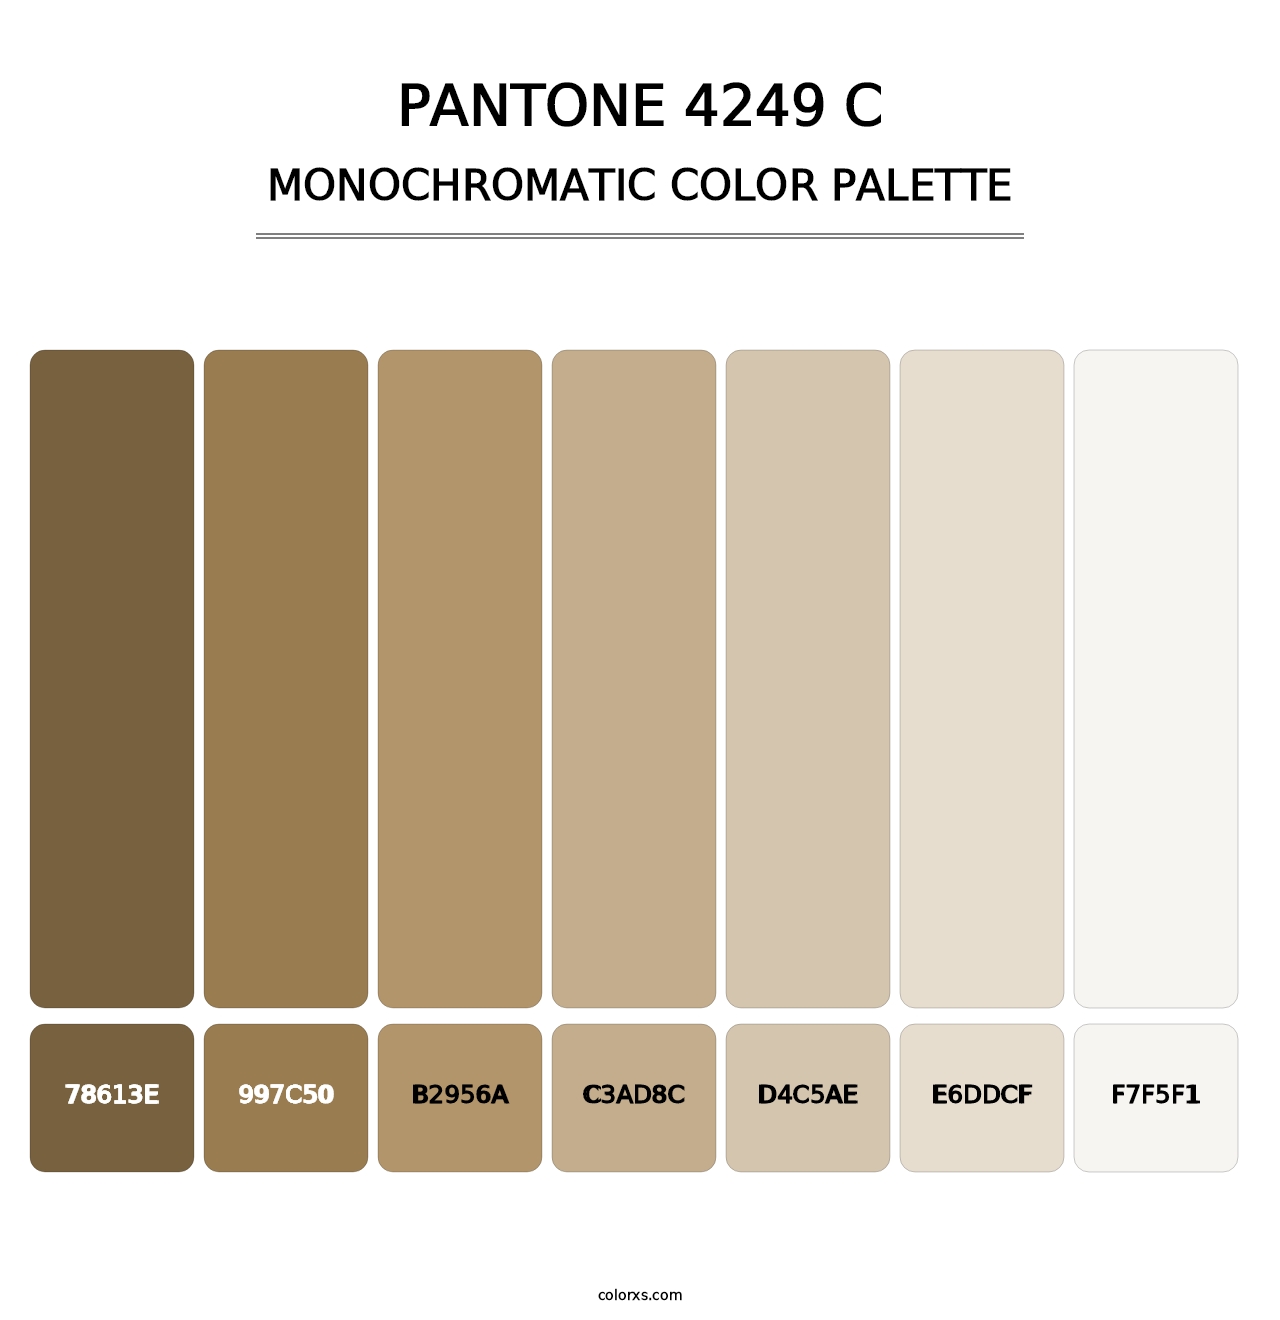 PANTONE 4249 C - Monochromatic Color Palette